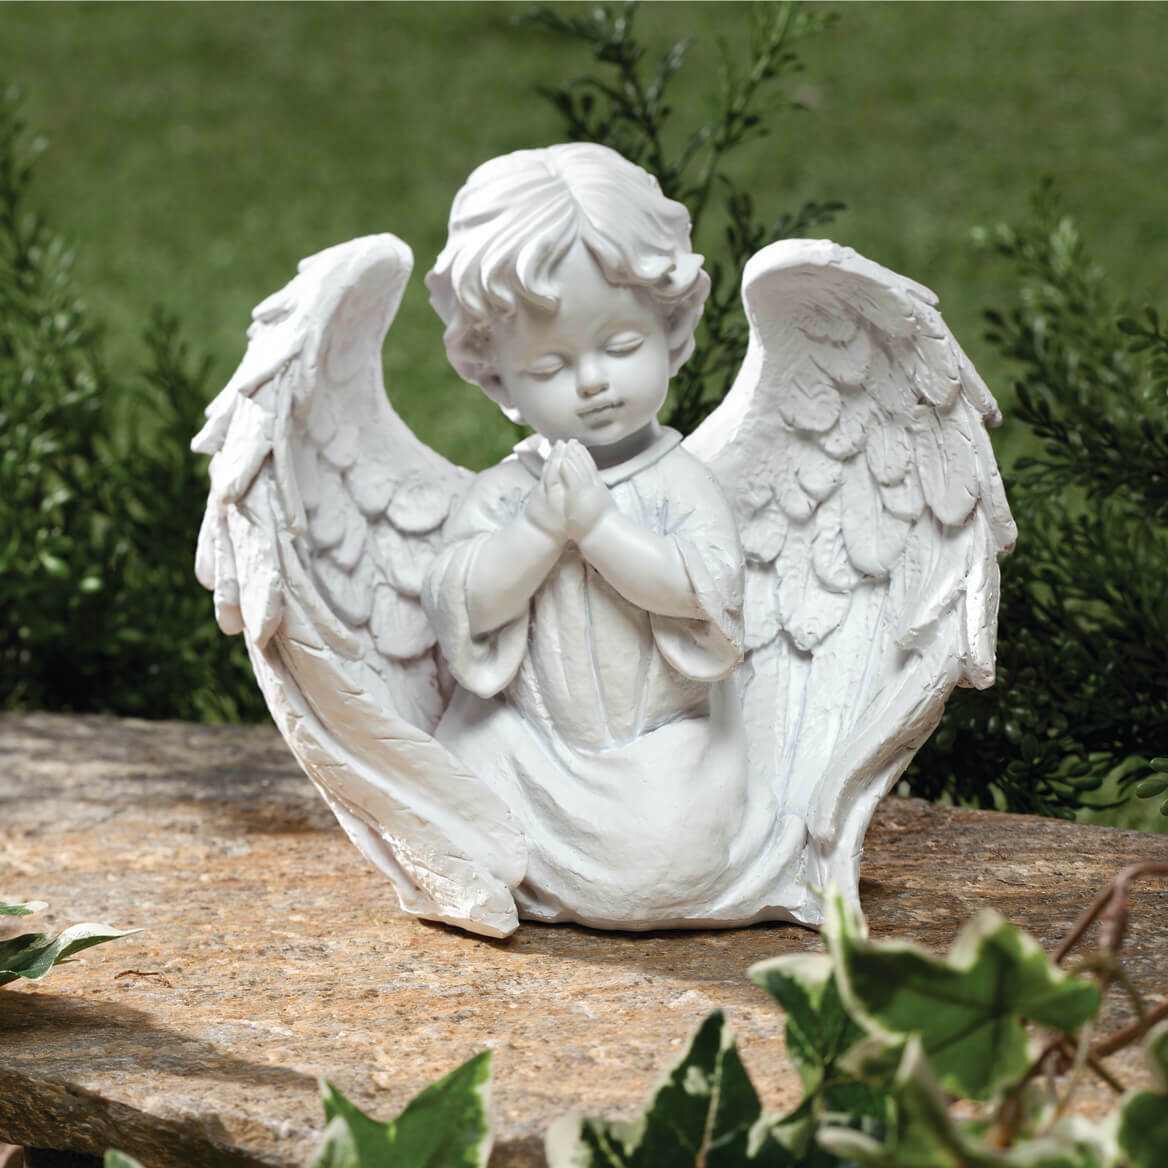 Символ безграничной любви и надежды: красивые снимки ребенка-ангела наполняют сердца теплотой.